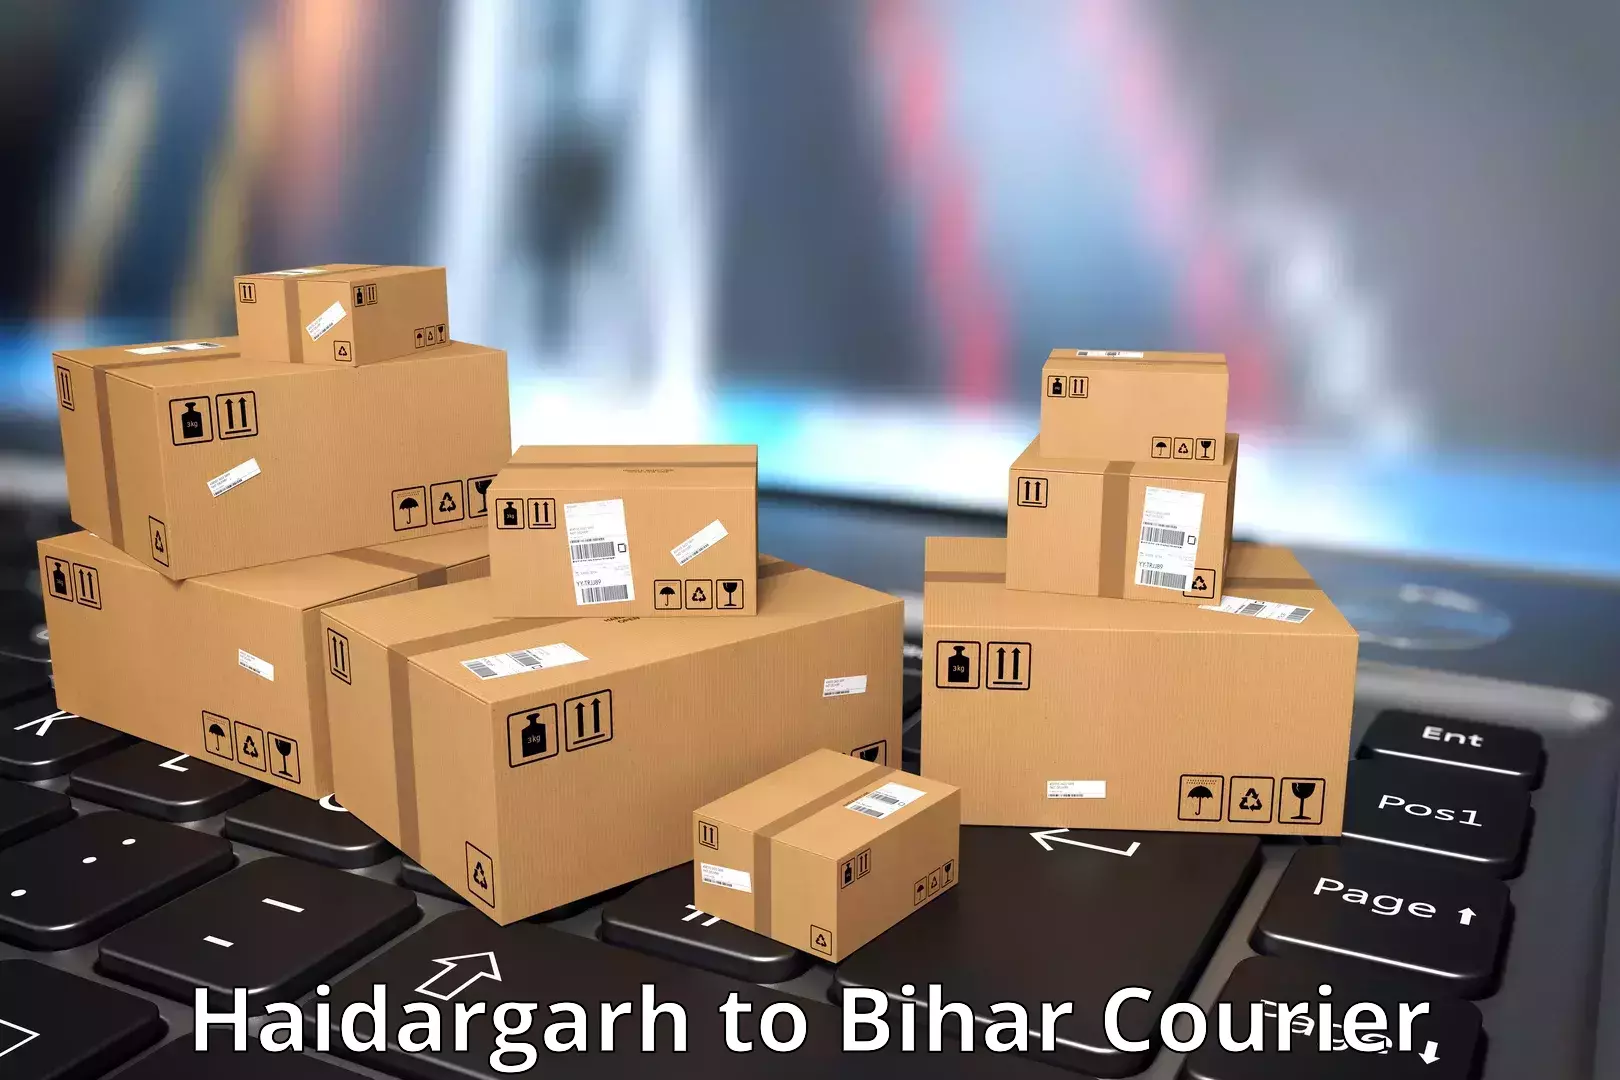 Efficient freight service Haidargarh to Vaishali